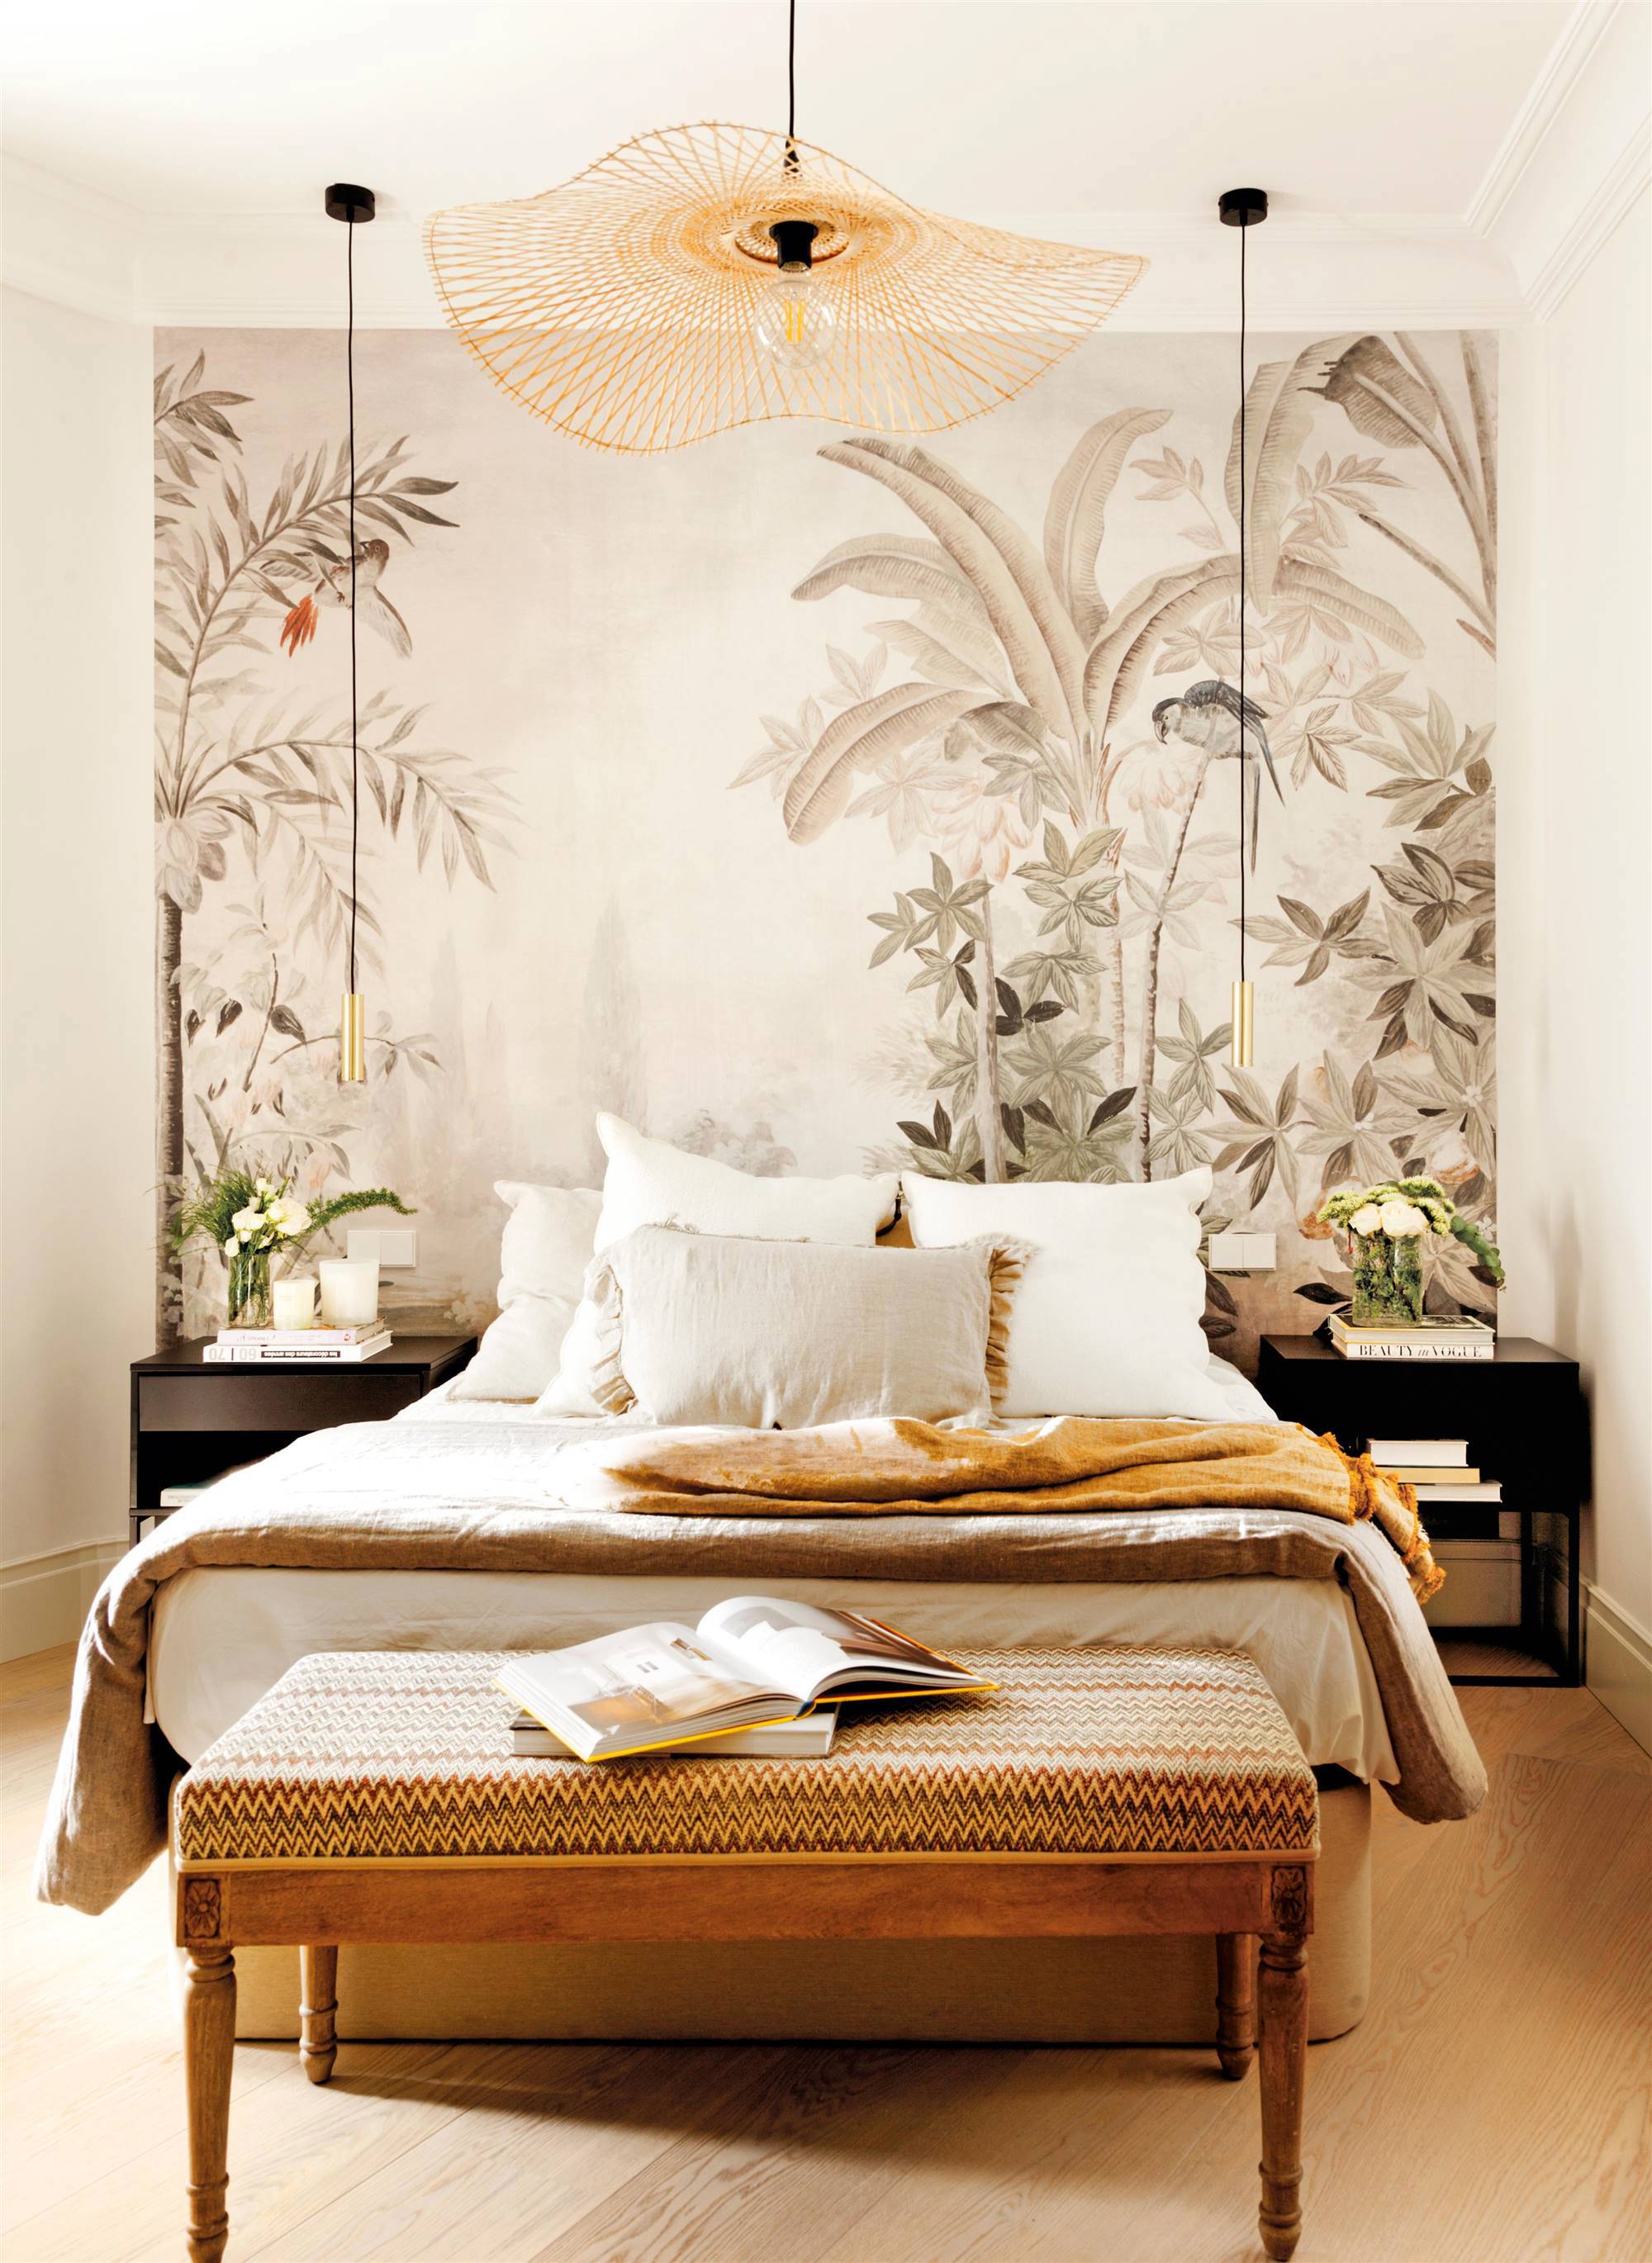 Dormitorio con papel pintado exótico en el cabecero. 